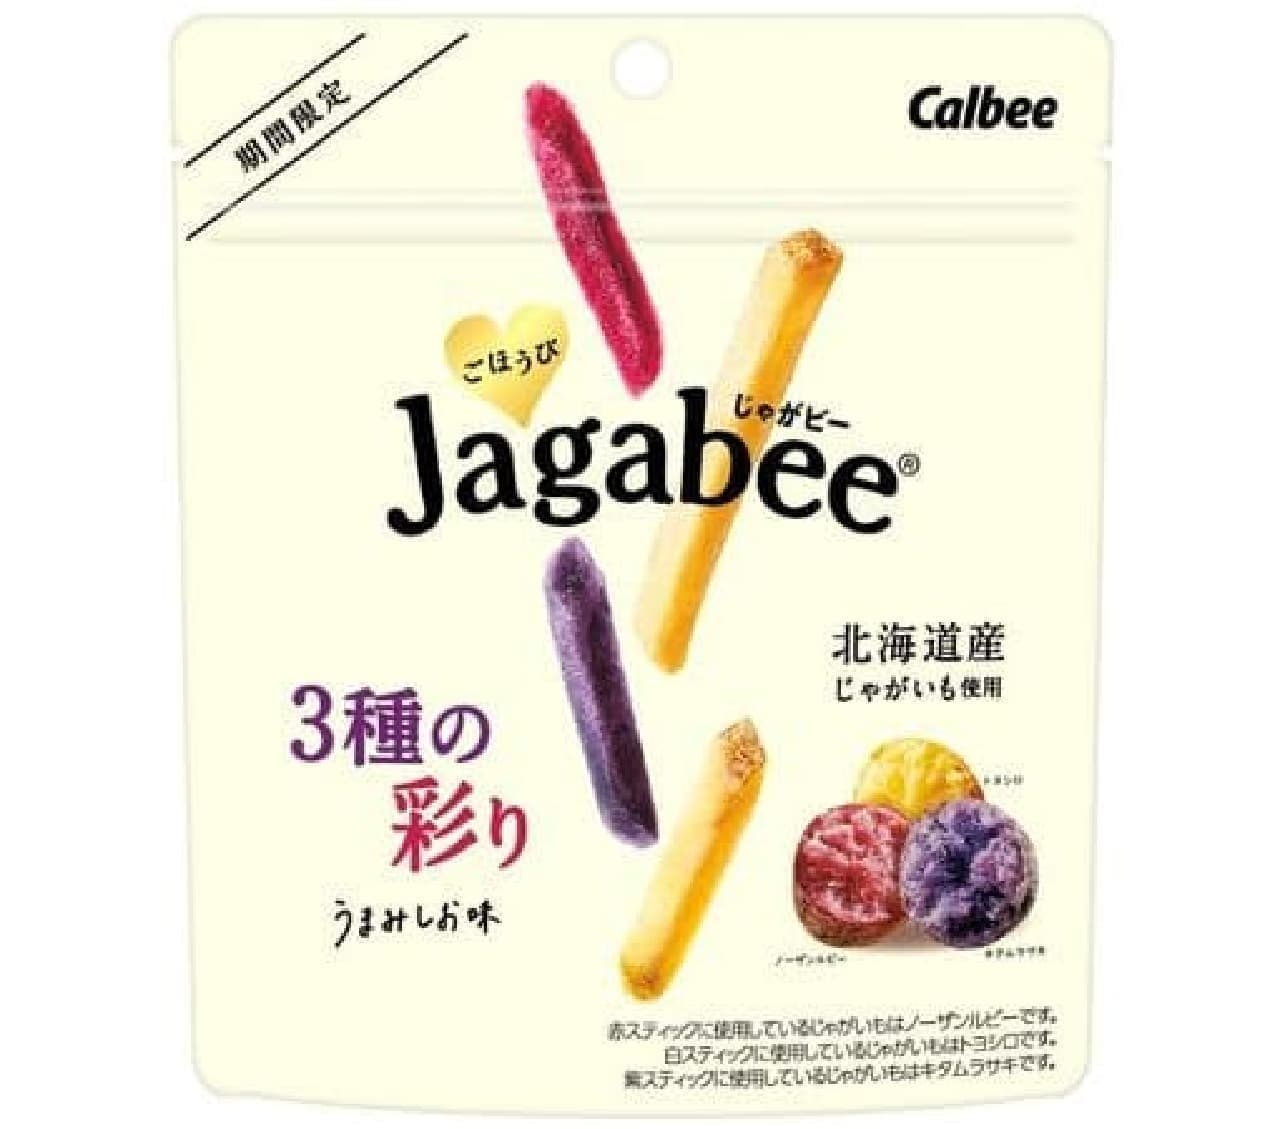 Calbee "Reward Jagabee 3 kinds of colorful umami taste"